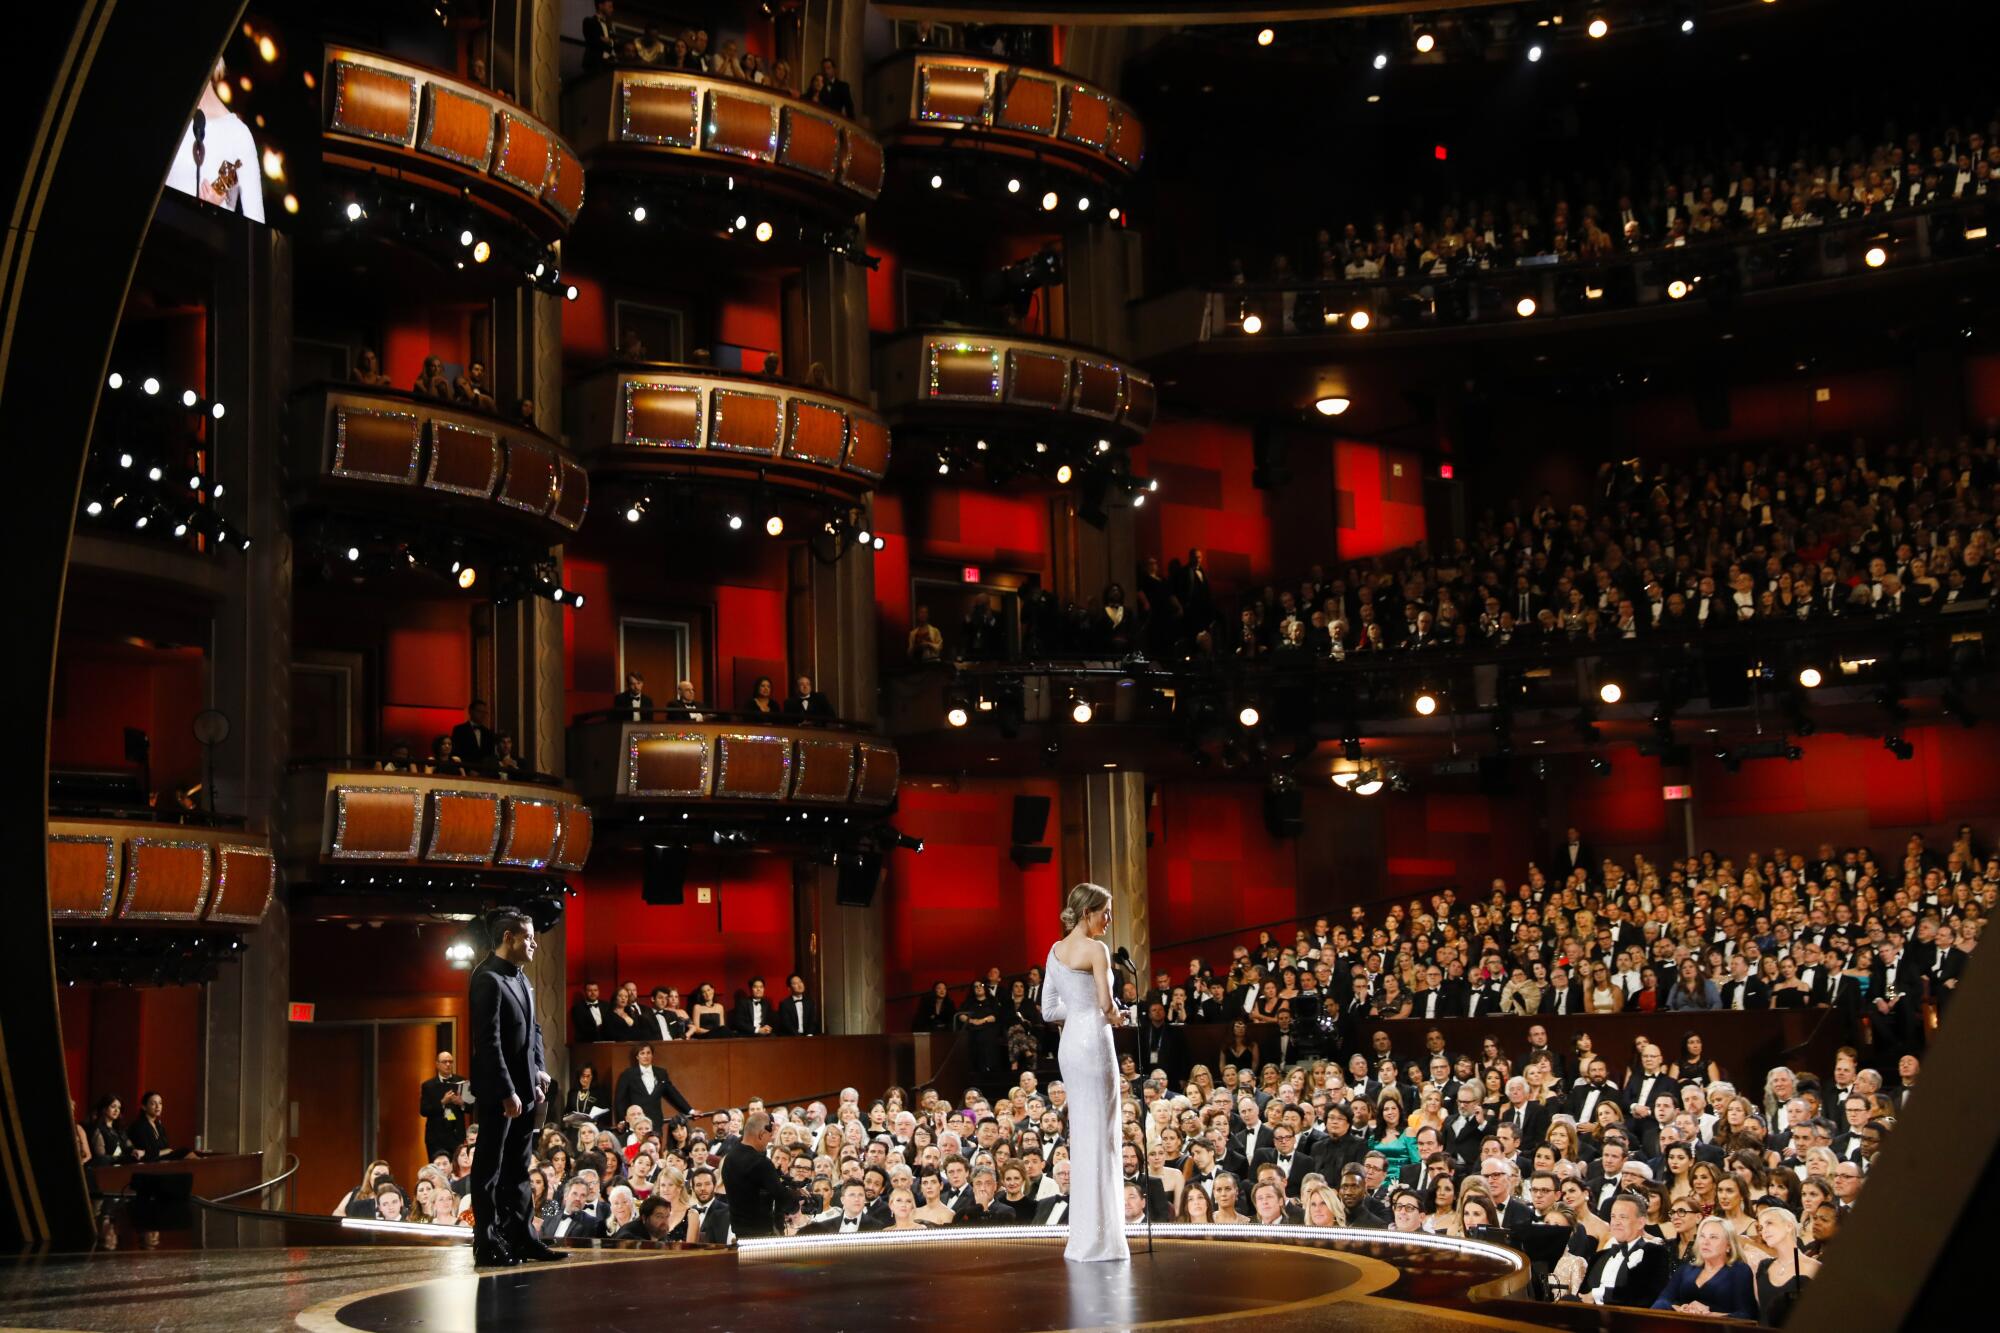 2020: Renée Zellweger accepts her lead actress Oscar